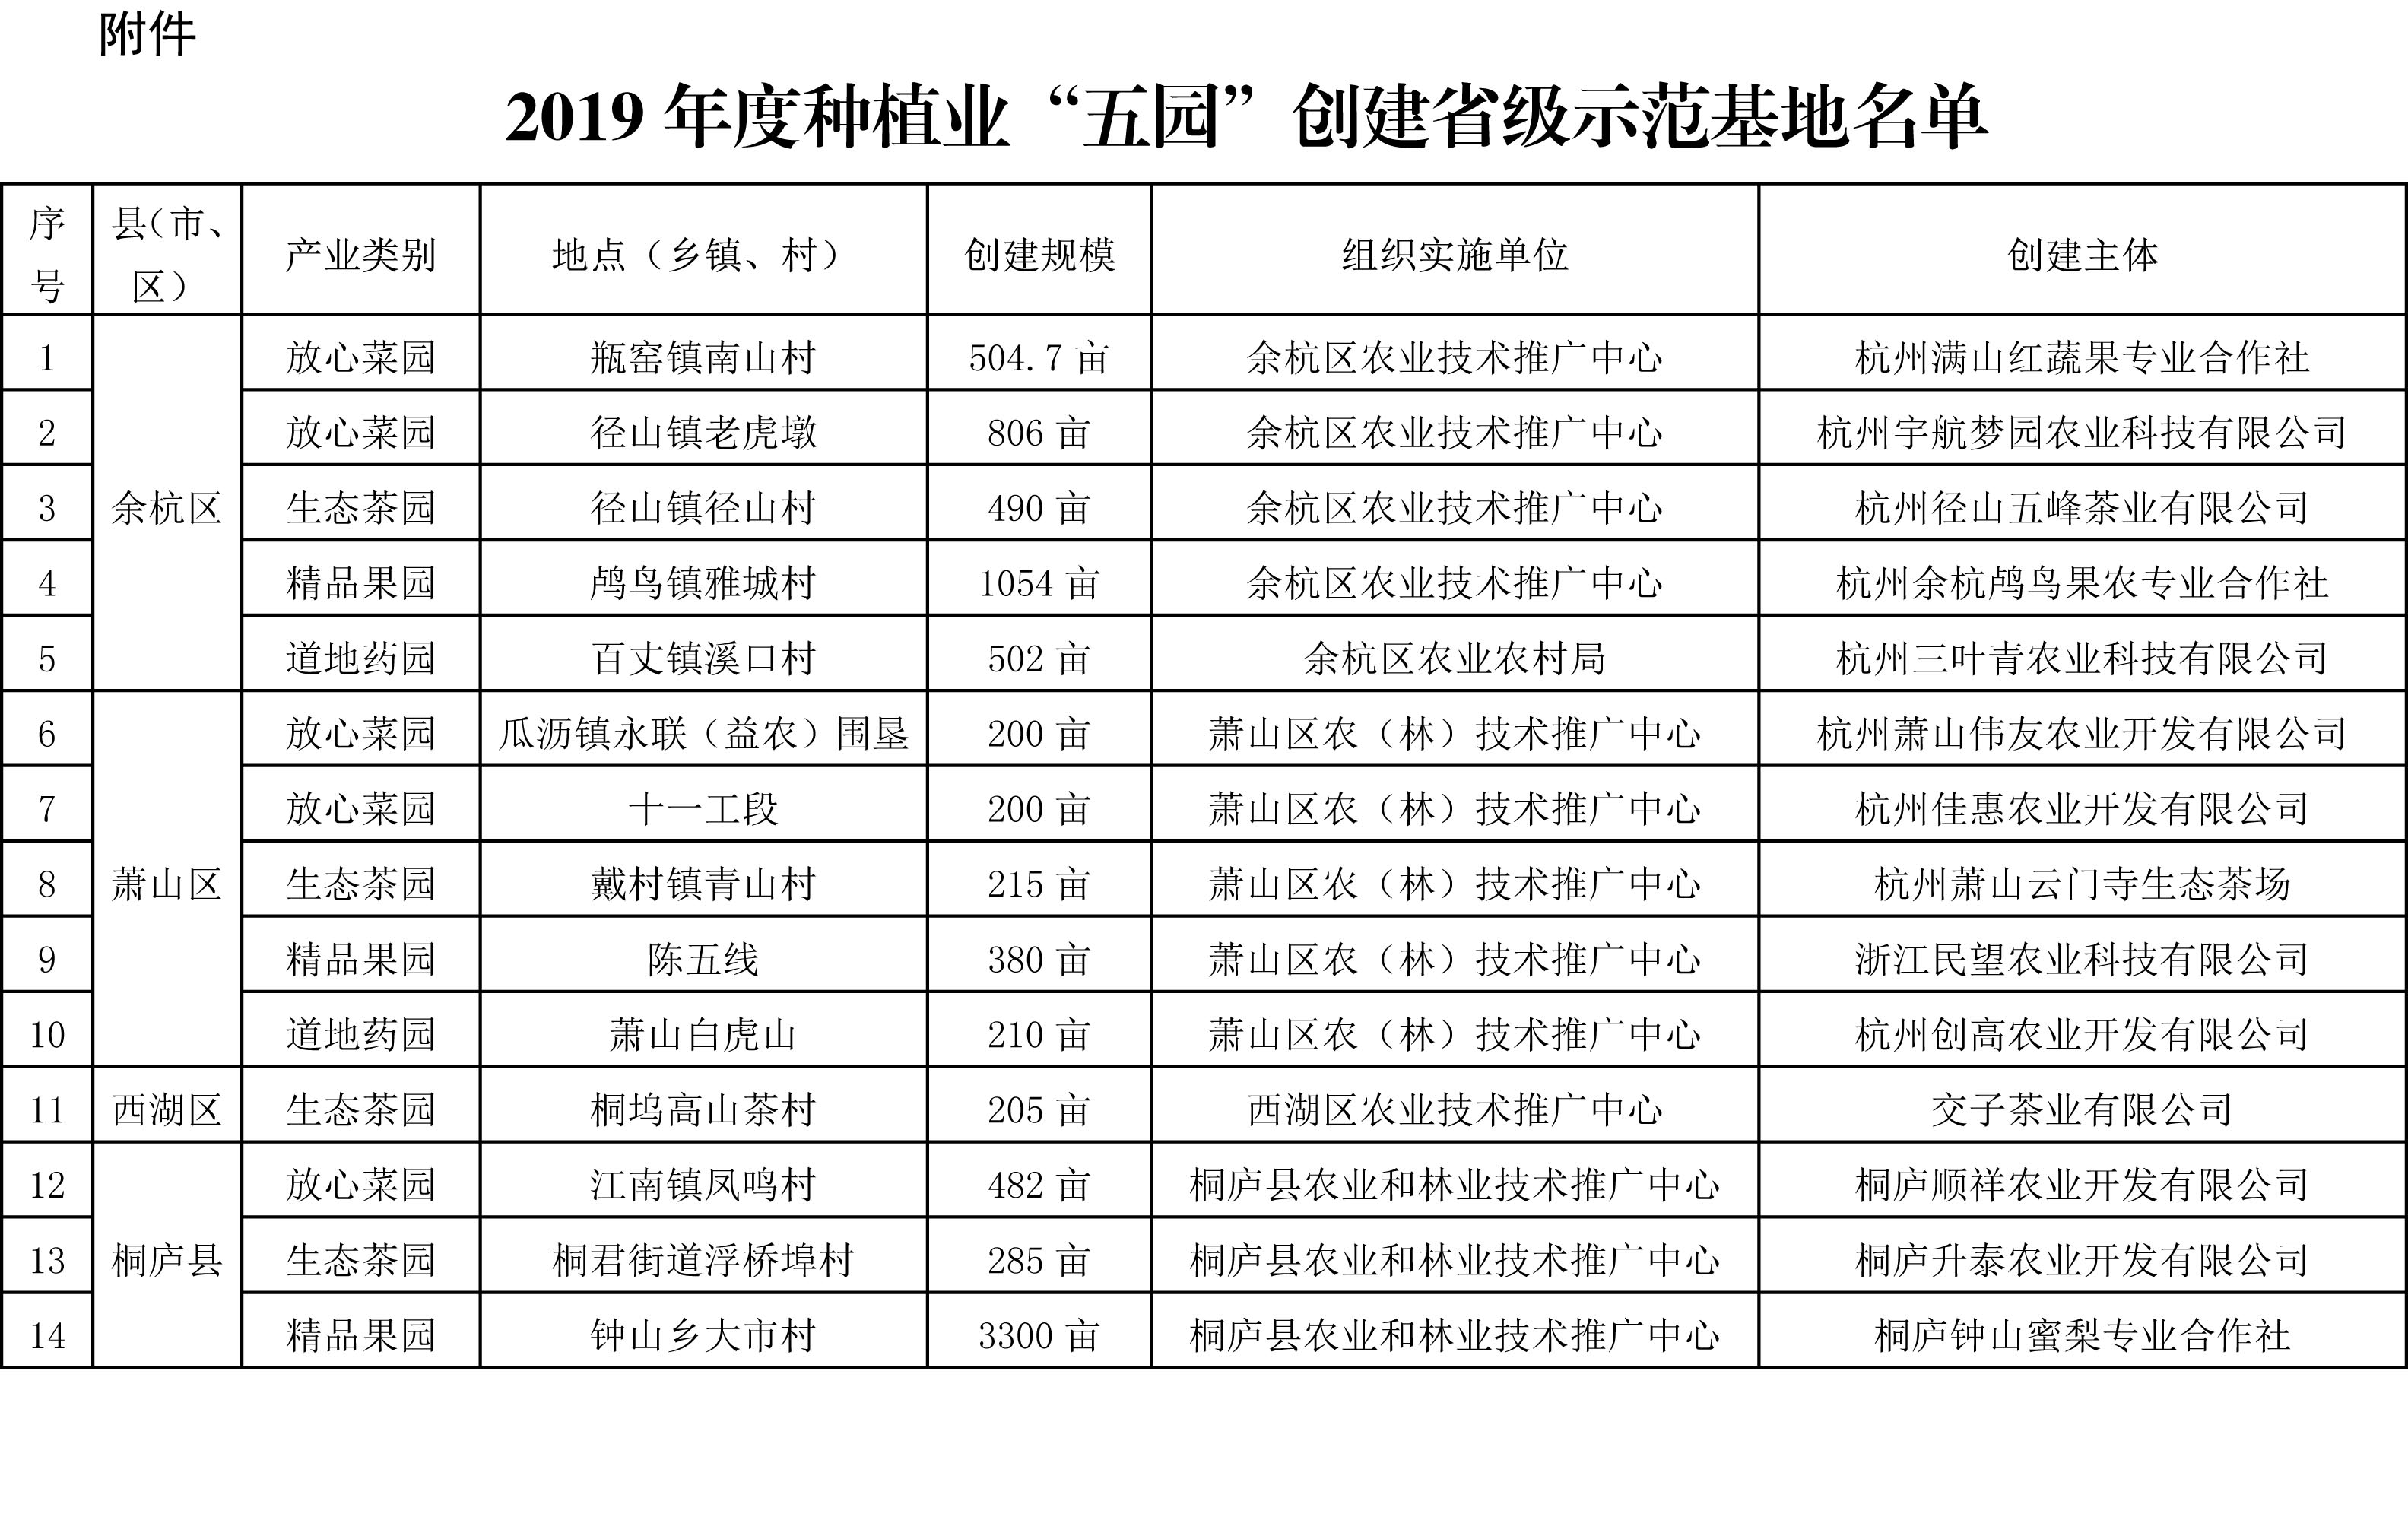 浙江省农业农村厅关于公布2019年度种植业“五园”创建省级示范基地名单的通知(图2)